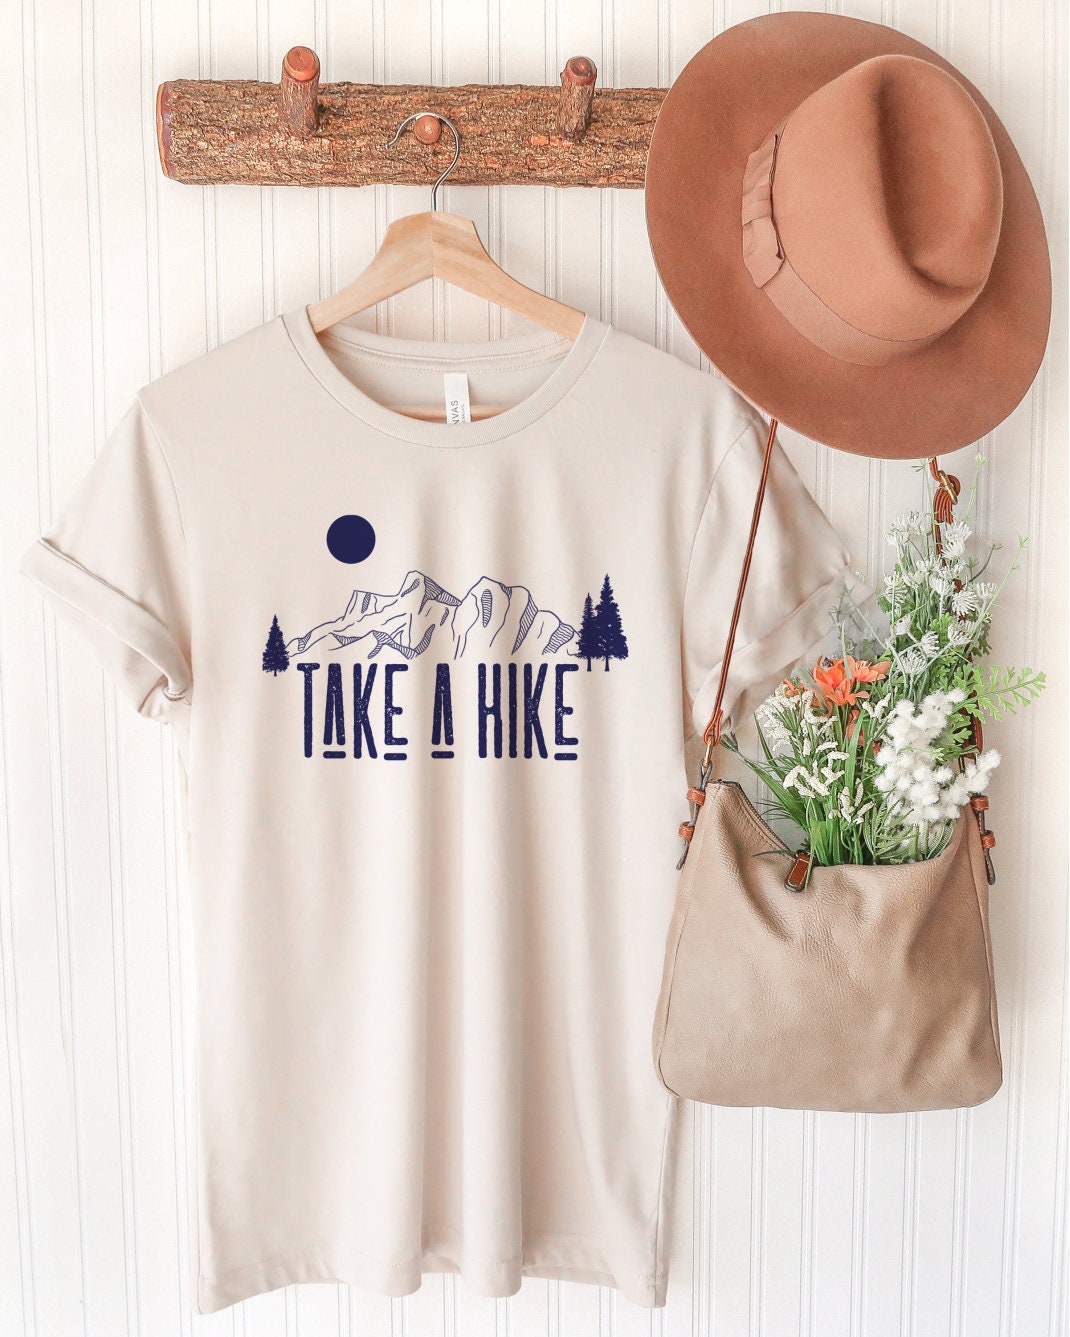 Adventure Shirt, Mountain Shirt, Camping Shirt, Adventure Lover Shirt, Wanderlust Shirt, Outdoor Lover Shirt, Explorer Shirt, Traveler Shirt